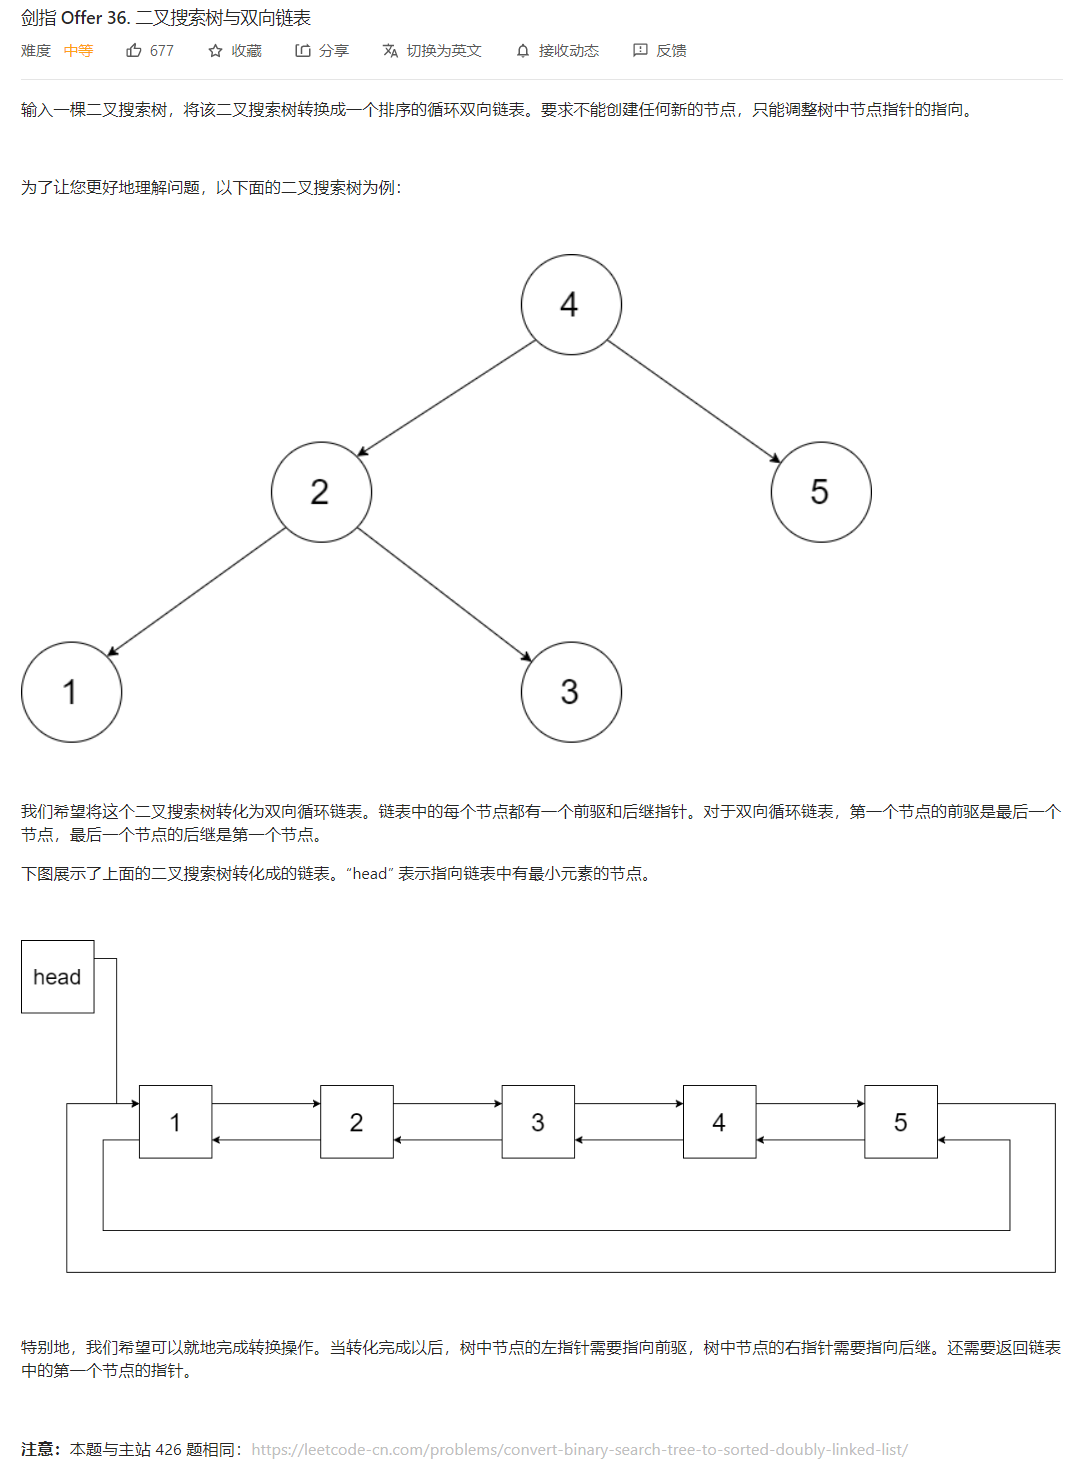 【C++】二叉搜索树经典OJ题目